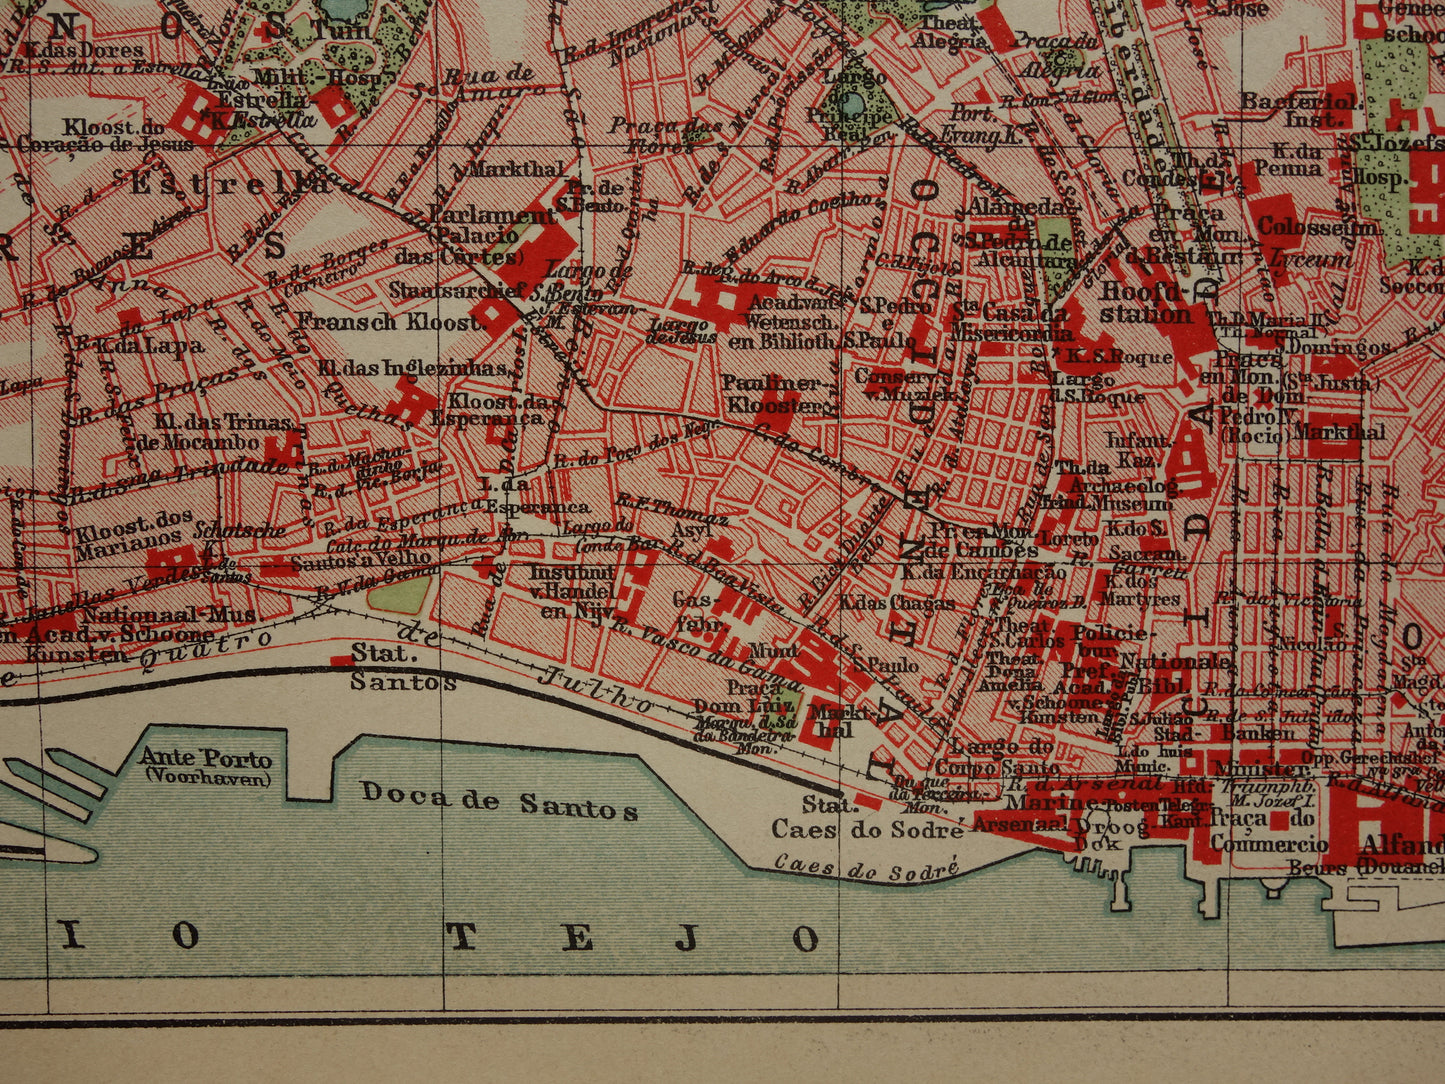 LISSABON oude kaart van Lissabon Portugal uit 1909 originele antieke plattegrond vintage landkaart